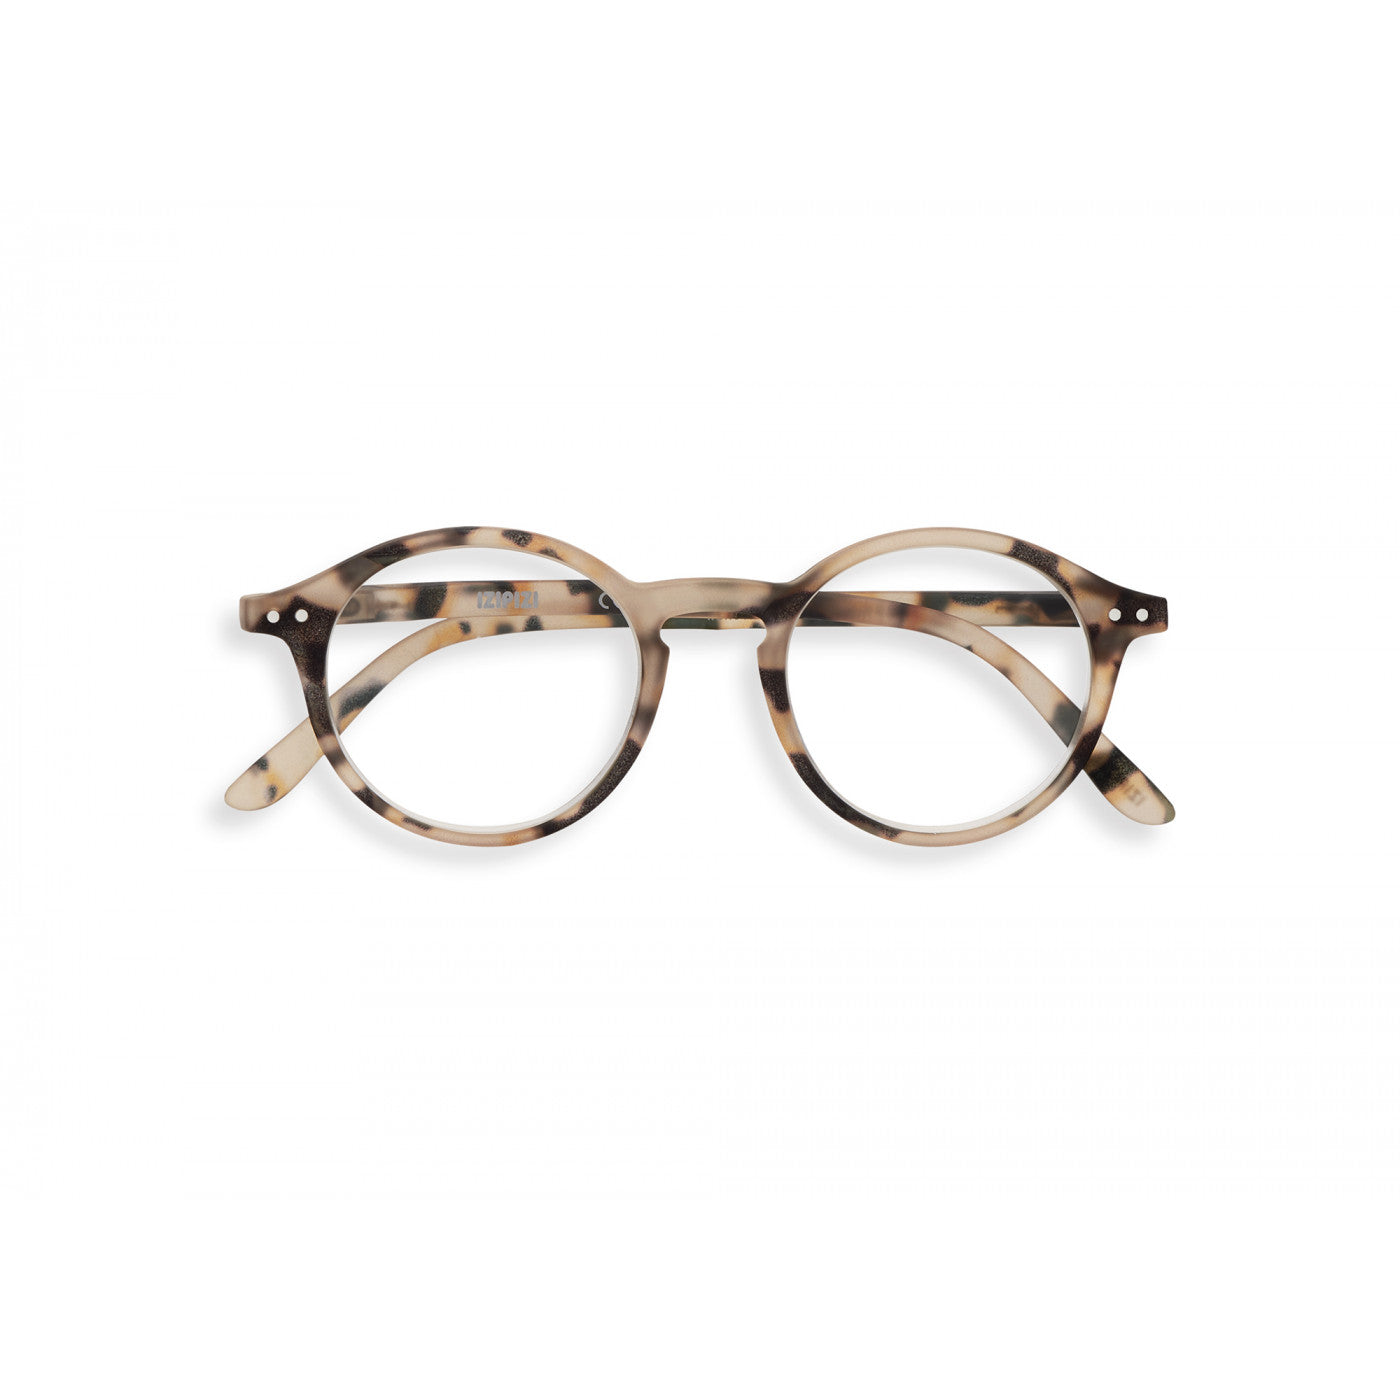 Unisex Reading Glasses - Style D - Light Tortoise 2